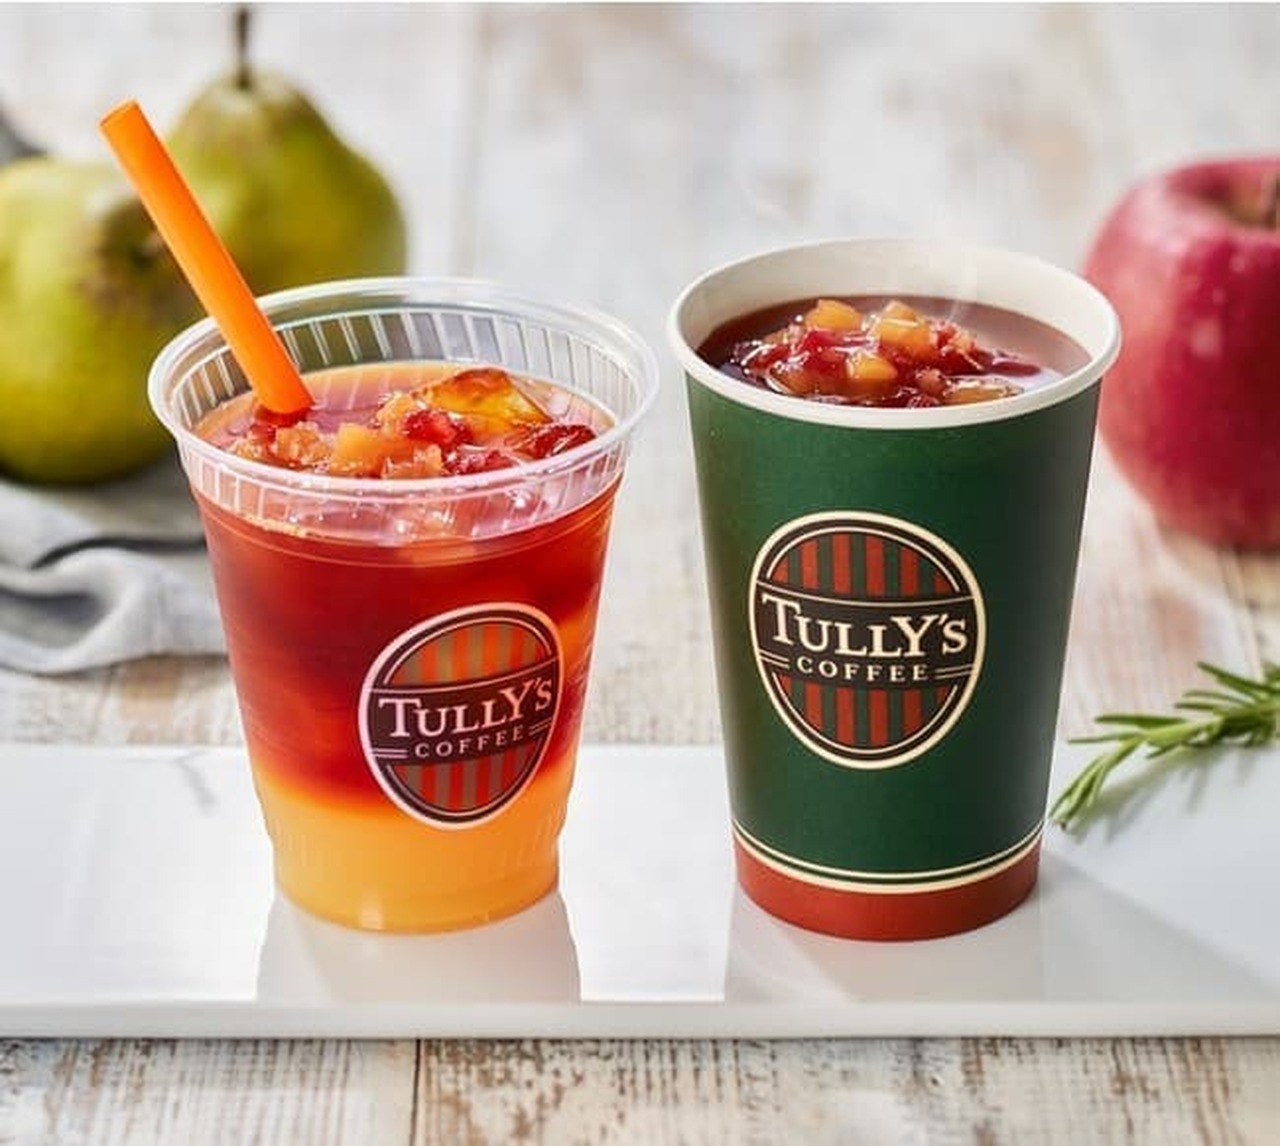 Tully's Coffee "& TEA Rooibos Fruit Tea Pair & Apple"